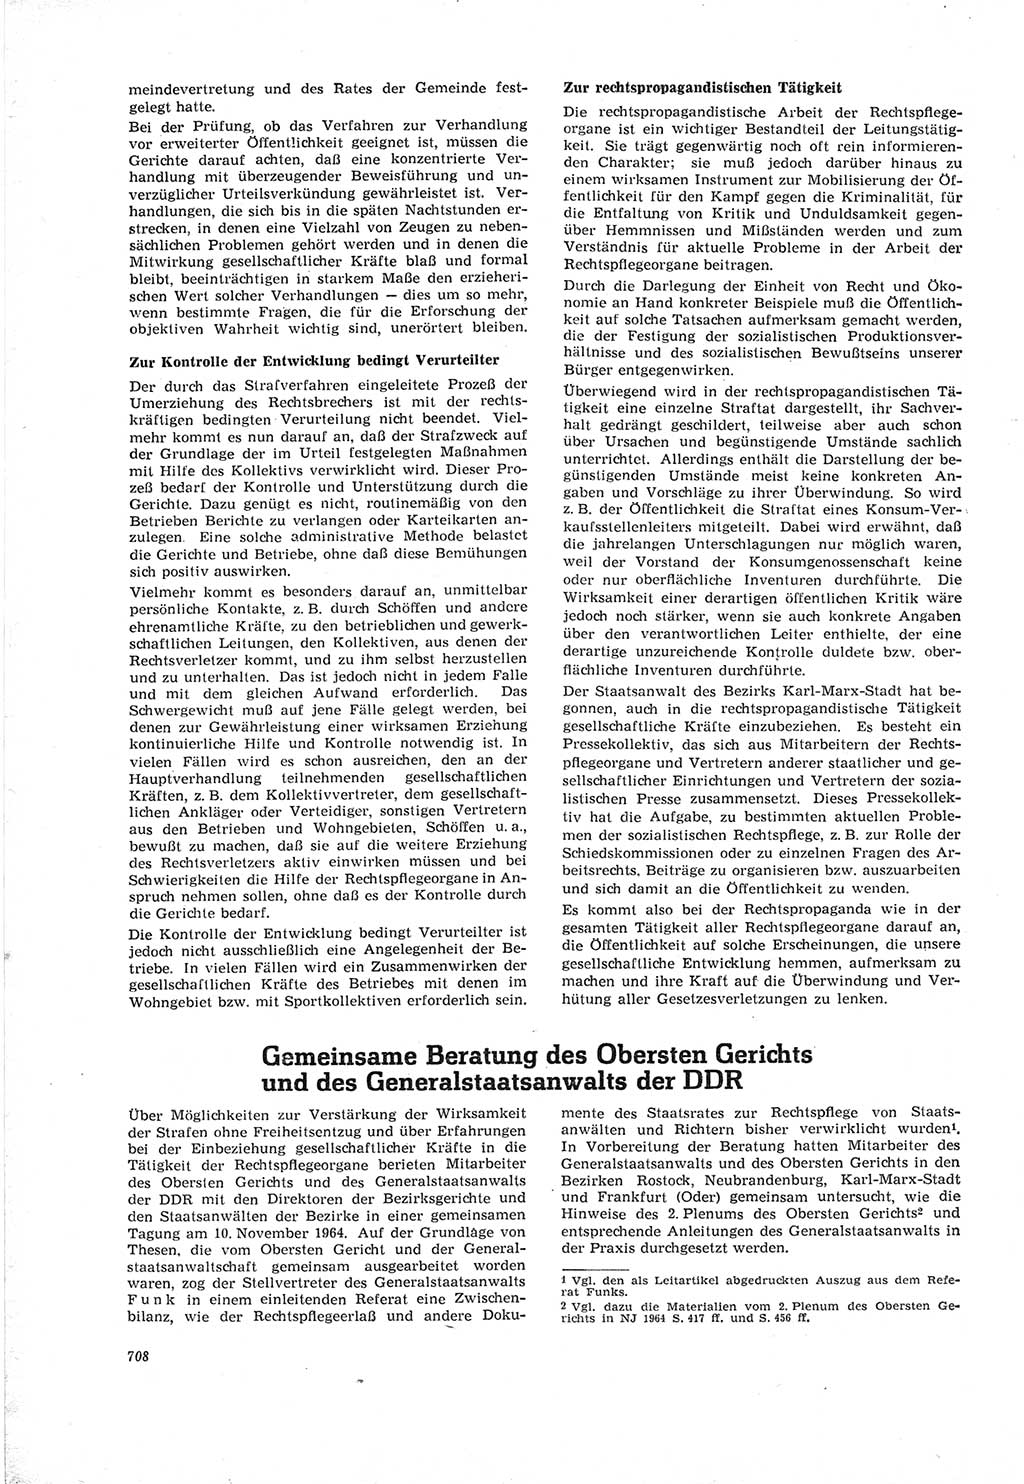 Neue Justiz (NJ), Zeitschrift für Recht und Rechtswissenschaft [Deutsche Demokratische Republik (DDR)], 18. Jahrgang 1964, Seite 708 (NJ DDR 1964, S. 708)